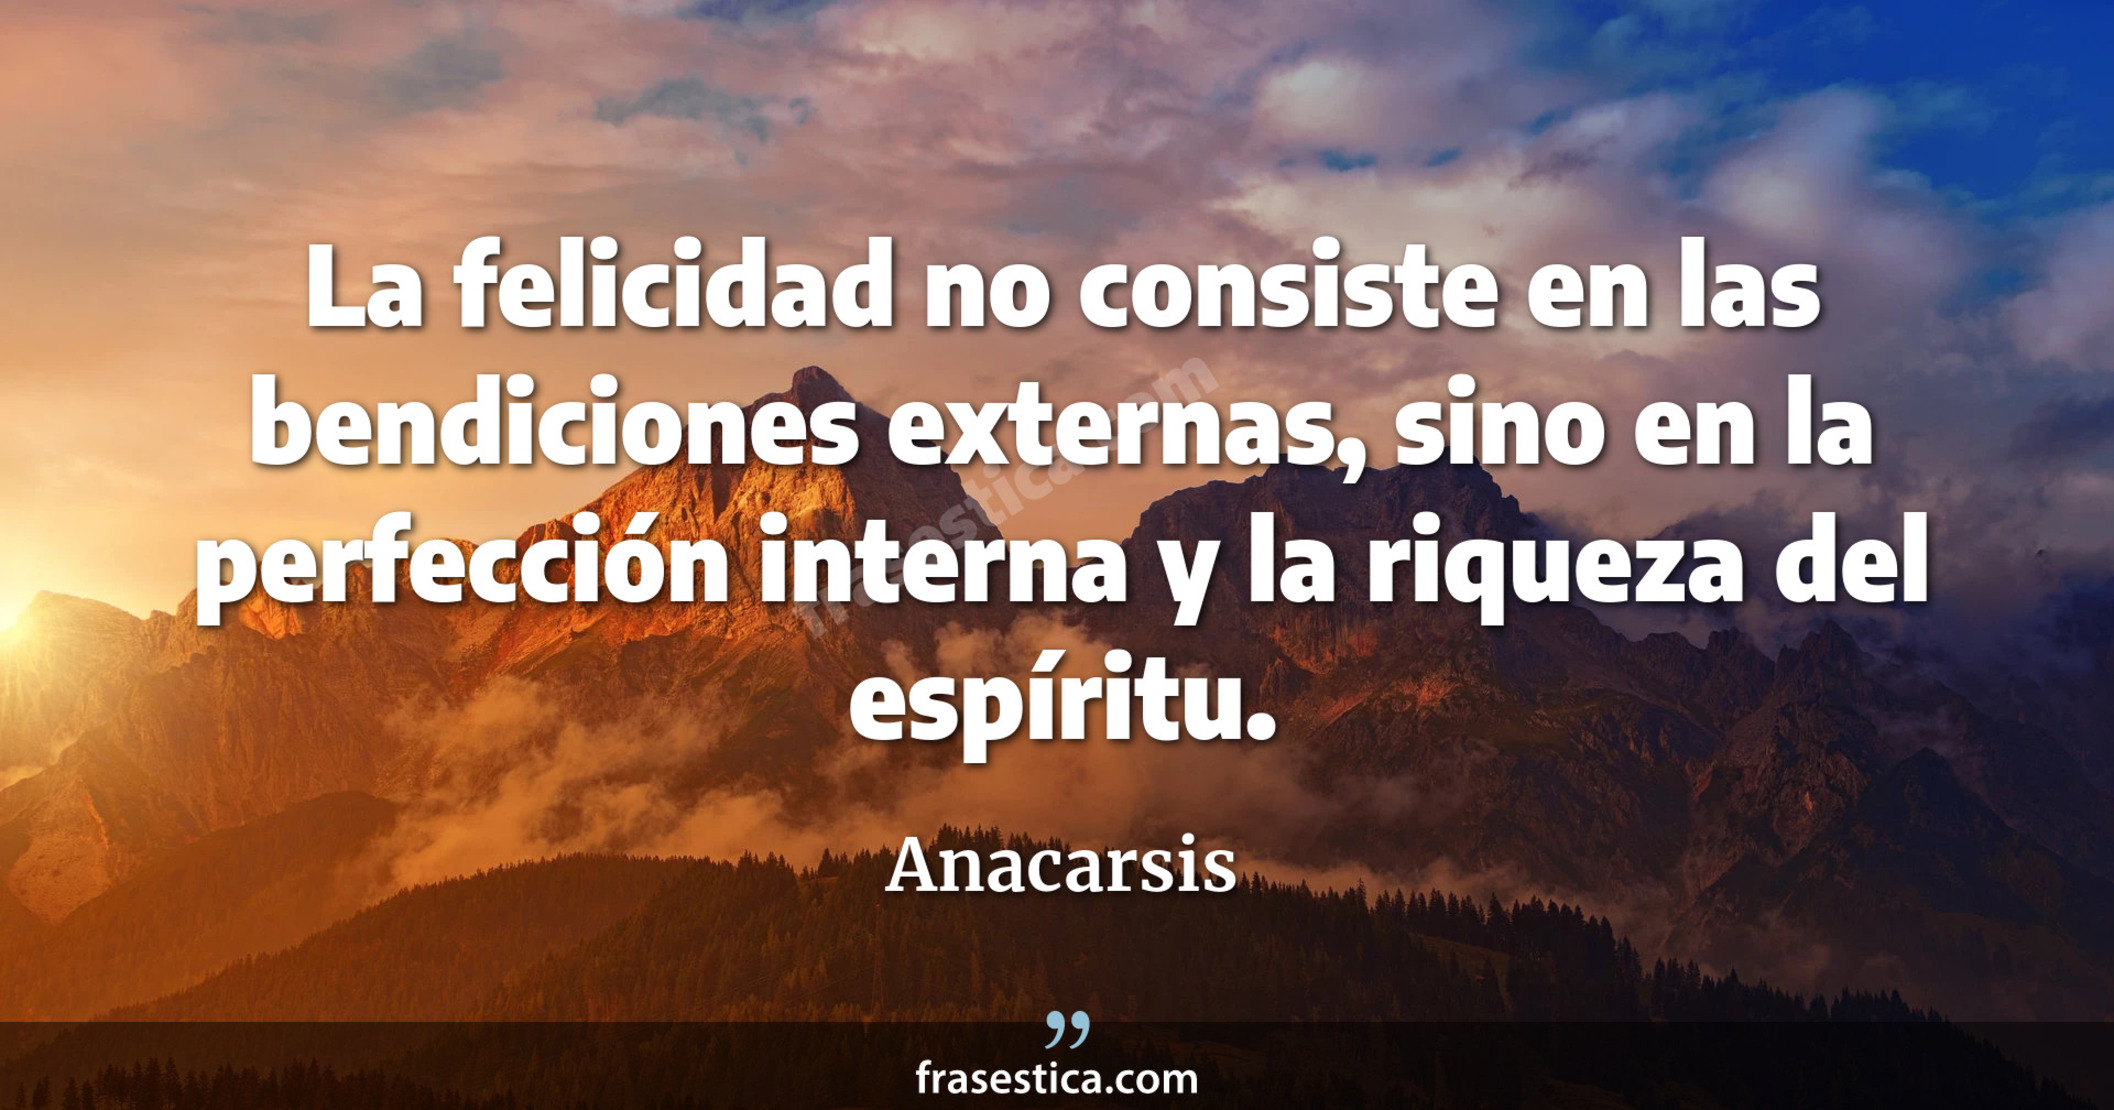 La felicidad no consiste en las bendiciones externas, sino en la perfección interna y la riqueza del espíritu. - Anacarsis